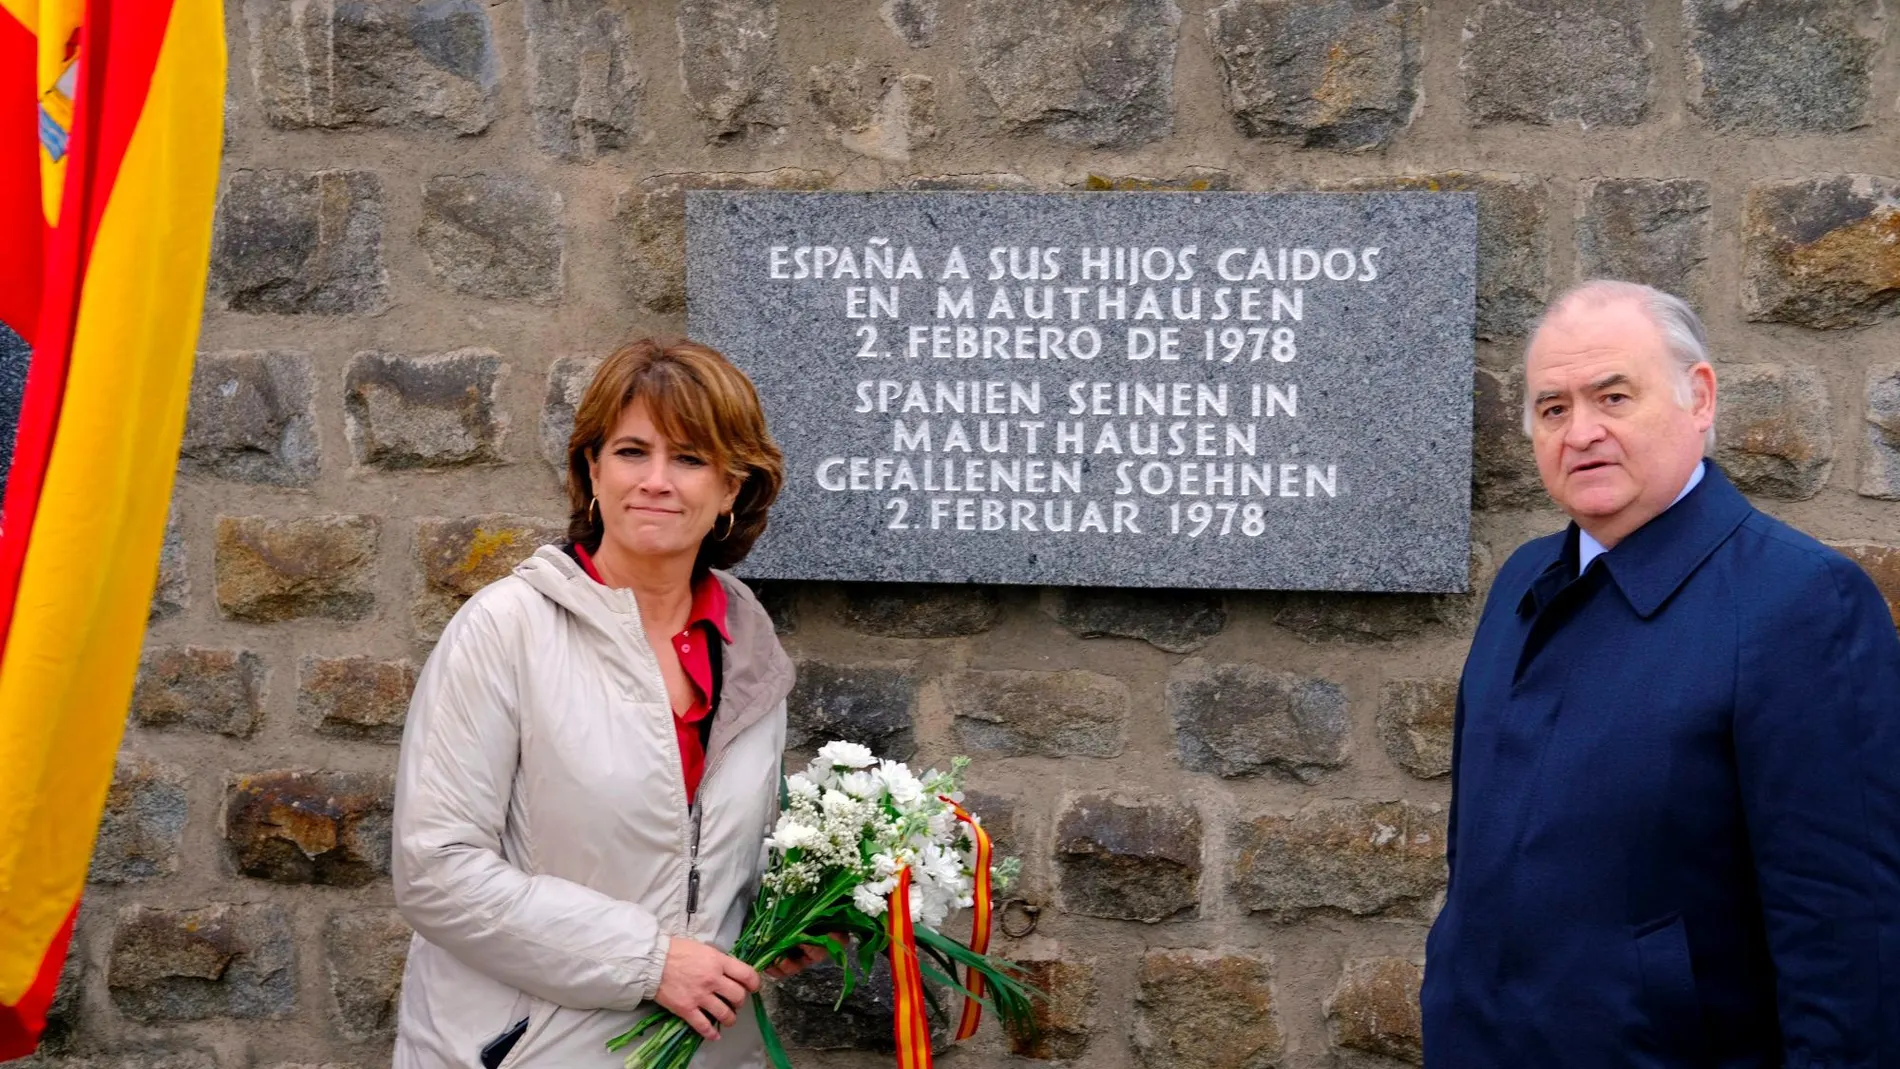 La ministra de Justicia, Dolores Delgado, que participa en los actos de recuerdo a las más de 8.000 víctimas españolas del nazismo, depositó un ramo de flores ante una placa de recuerdo a los que fallecieron en Mauthausen.